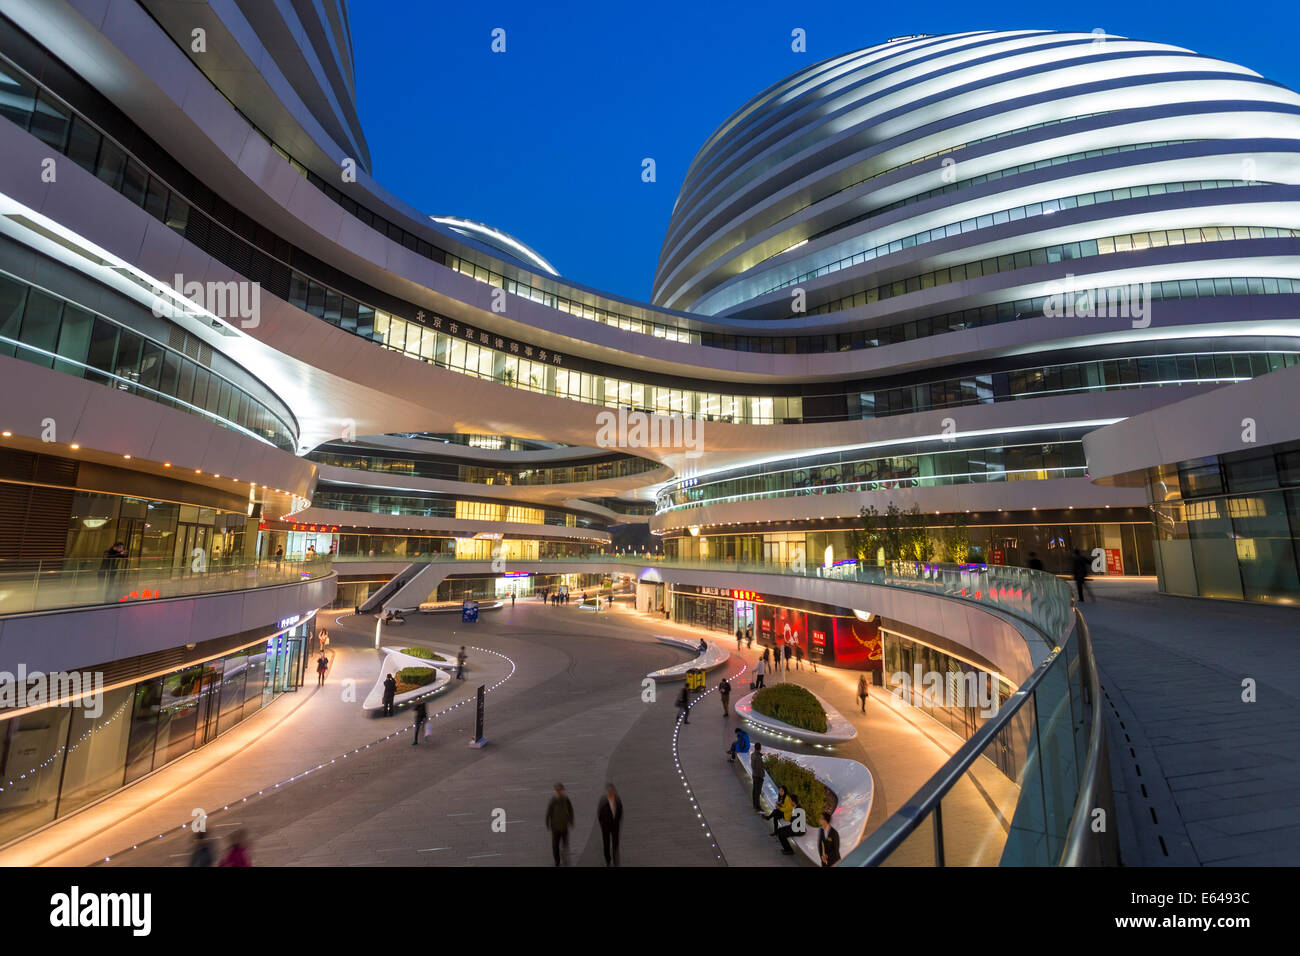 The new Galaxy Soho building designed by architect Zaha Hadid, Beijing, China Stock Photo